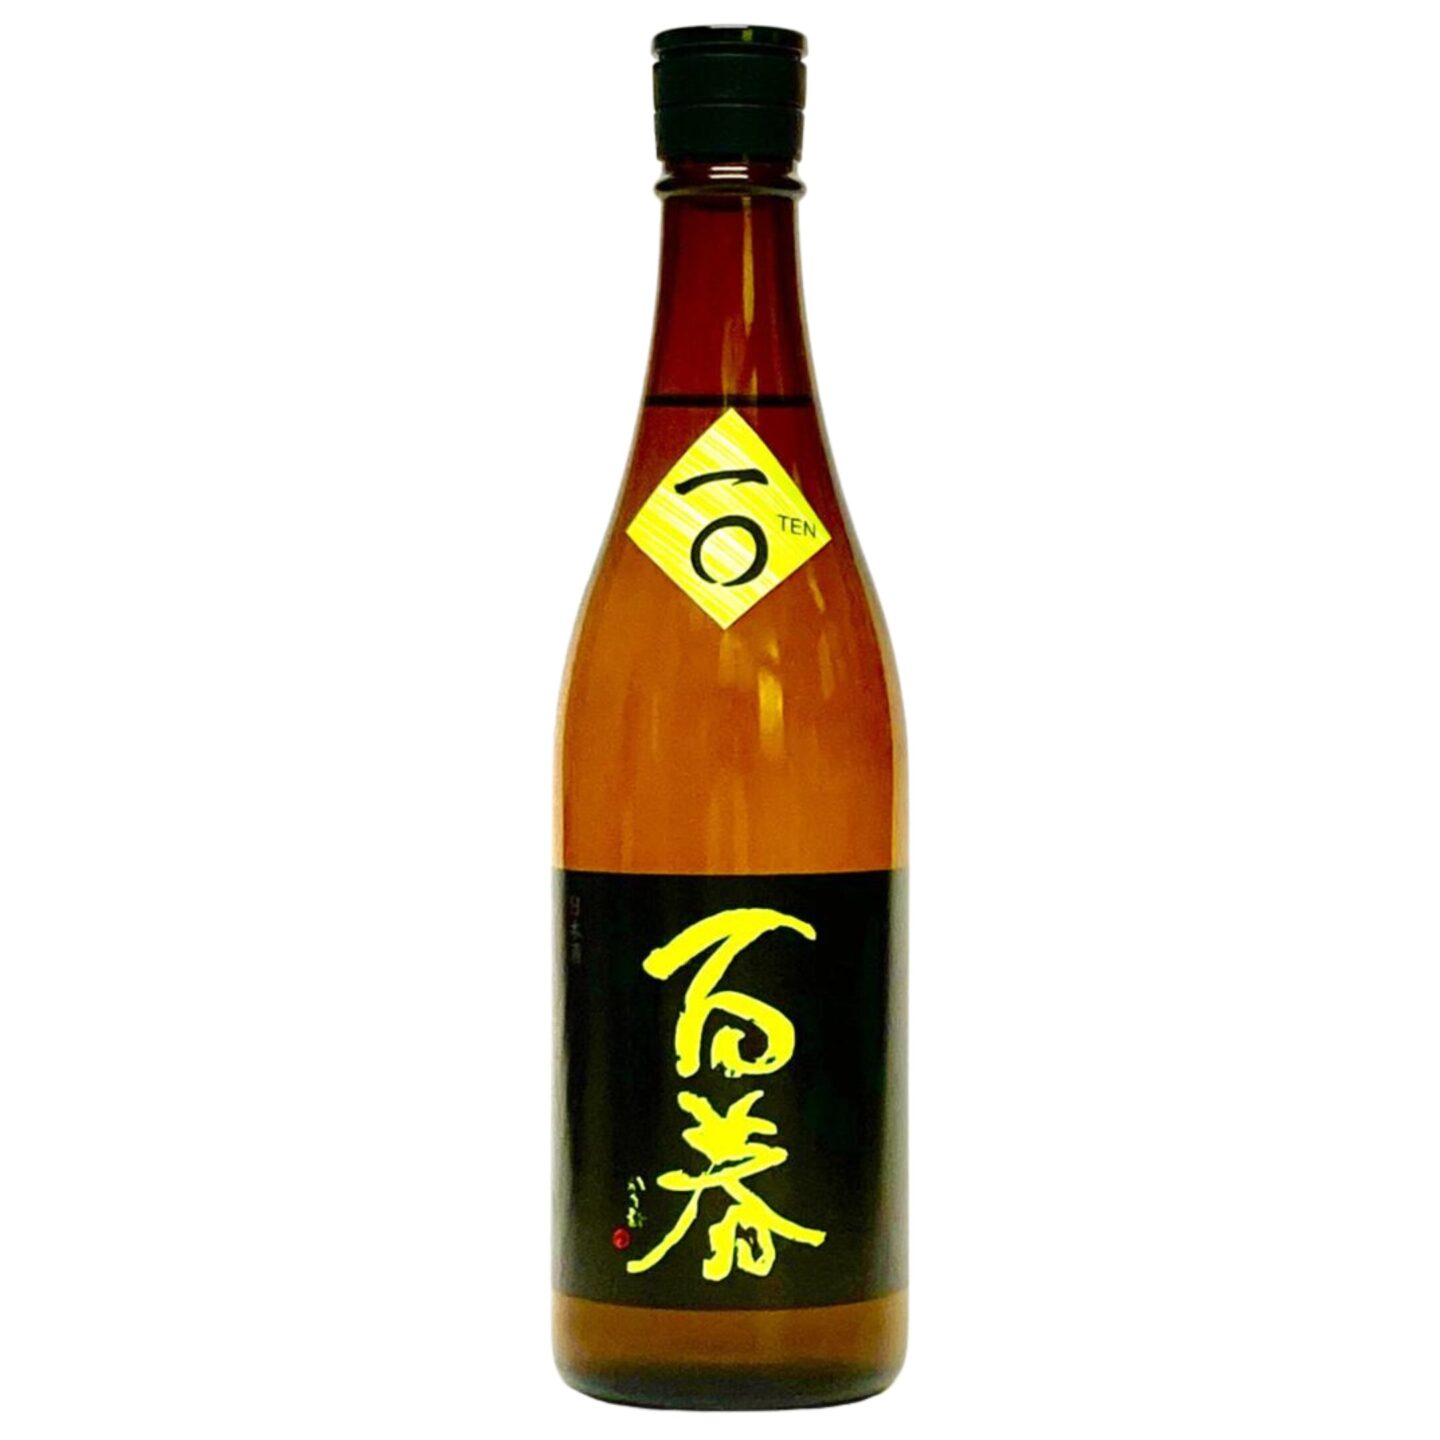 HYAKUSHUN 10 Junmai Ginjo (Unfined, Unpasteurised, Undiluted, Directly Bottled)